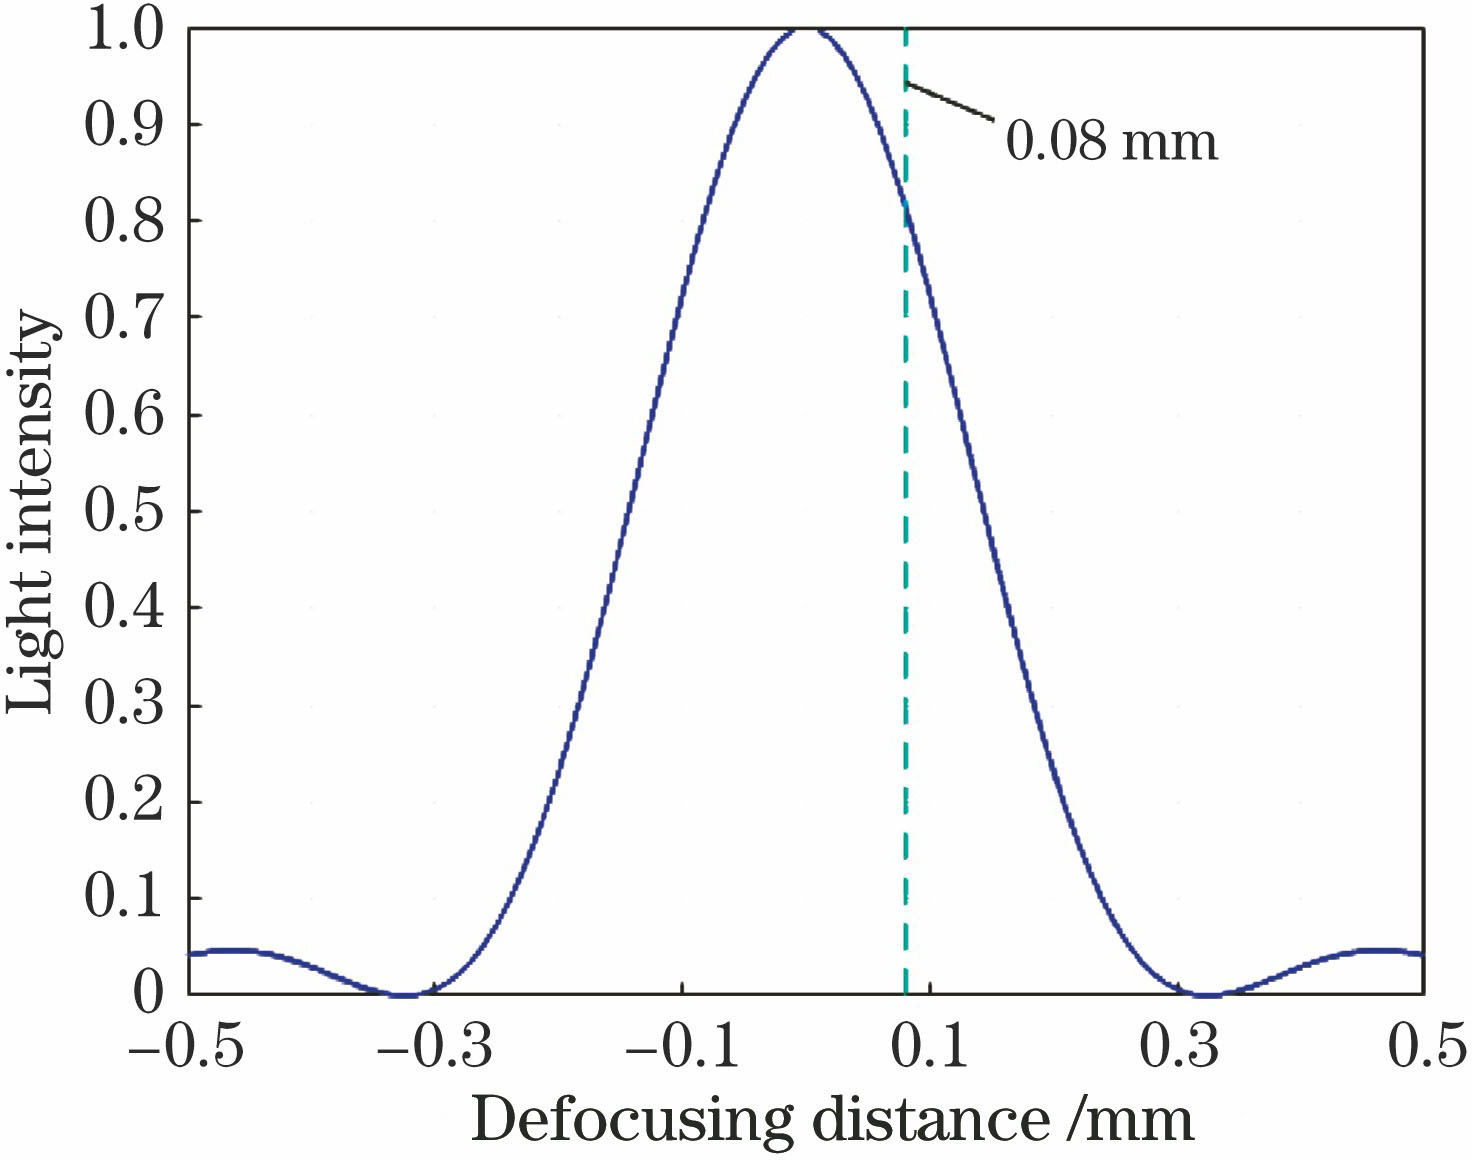 Relationship between light intensity and defocusing distance